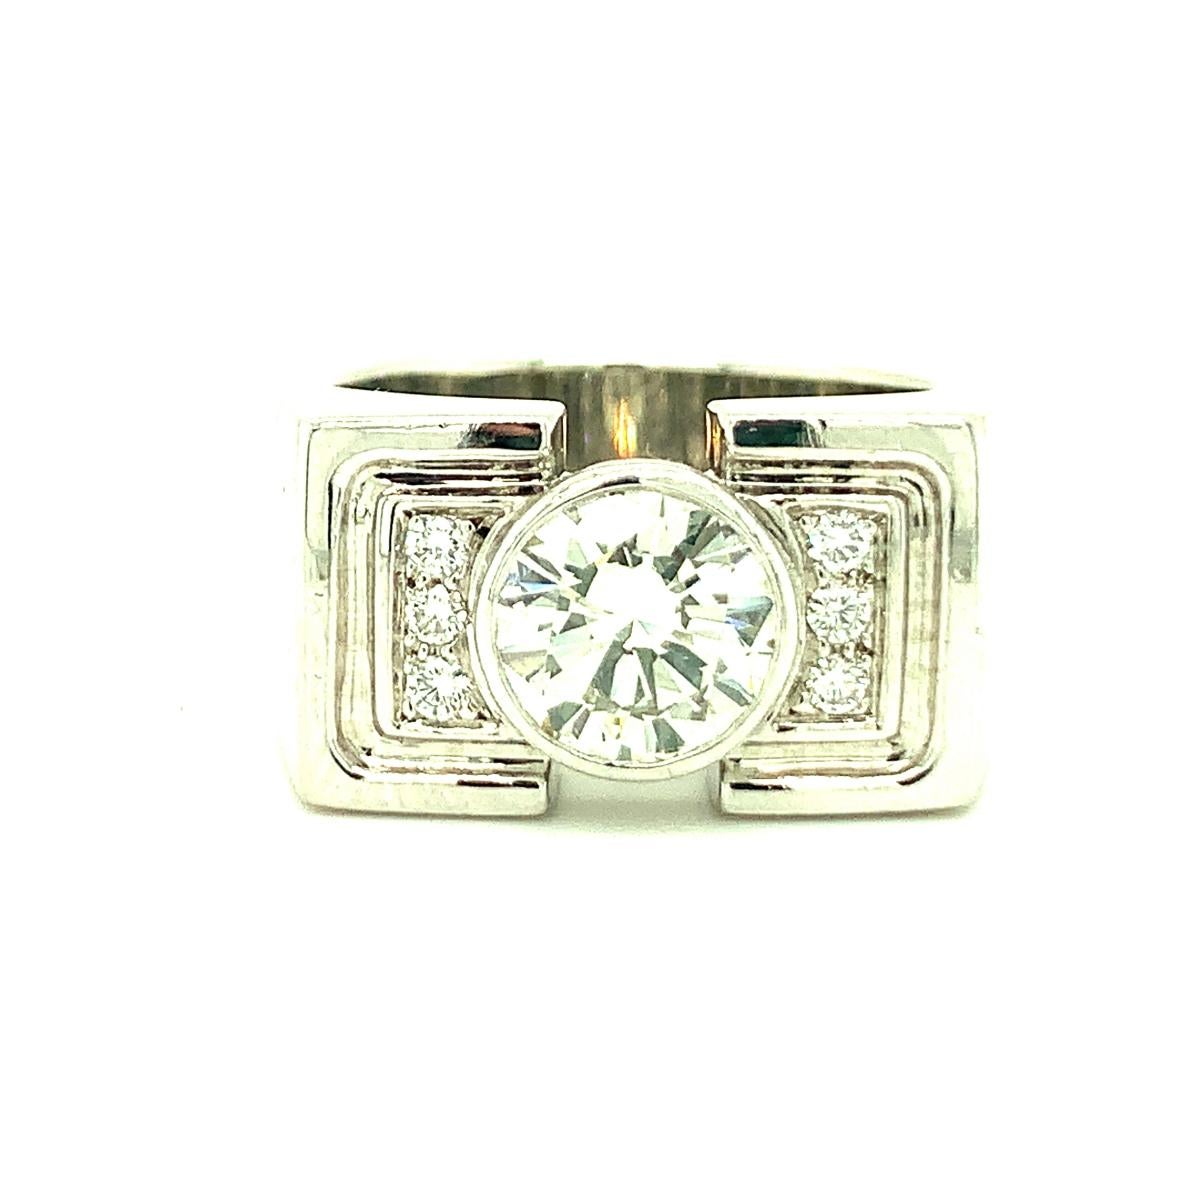 Brilliant Cut Diamond Solitaire Platinum Ring, circa 1960s For Sale